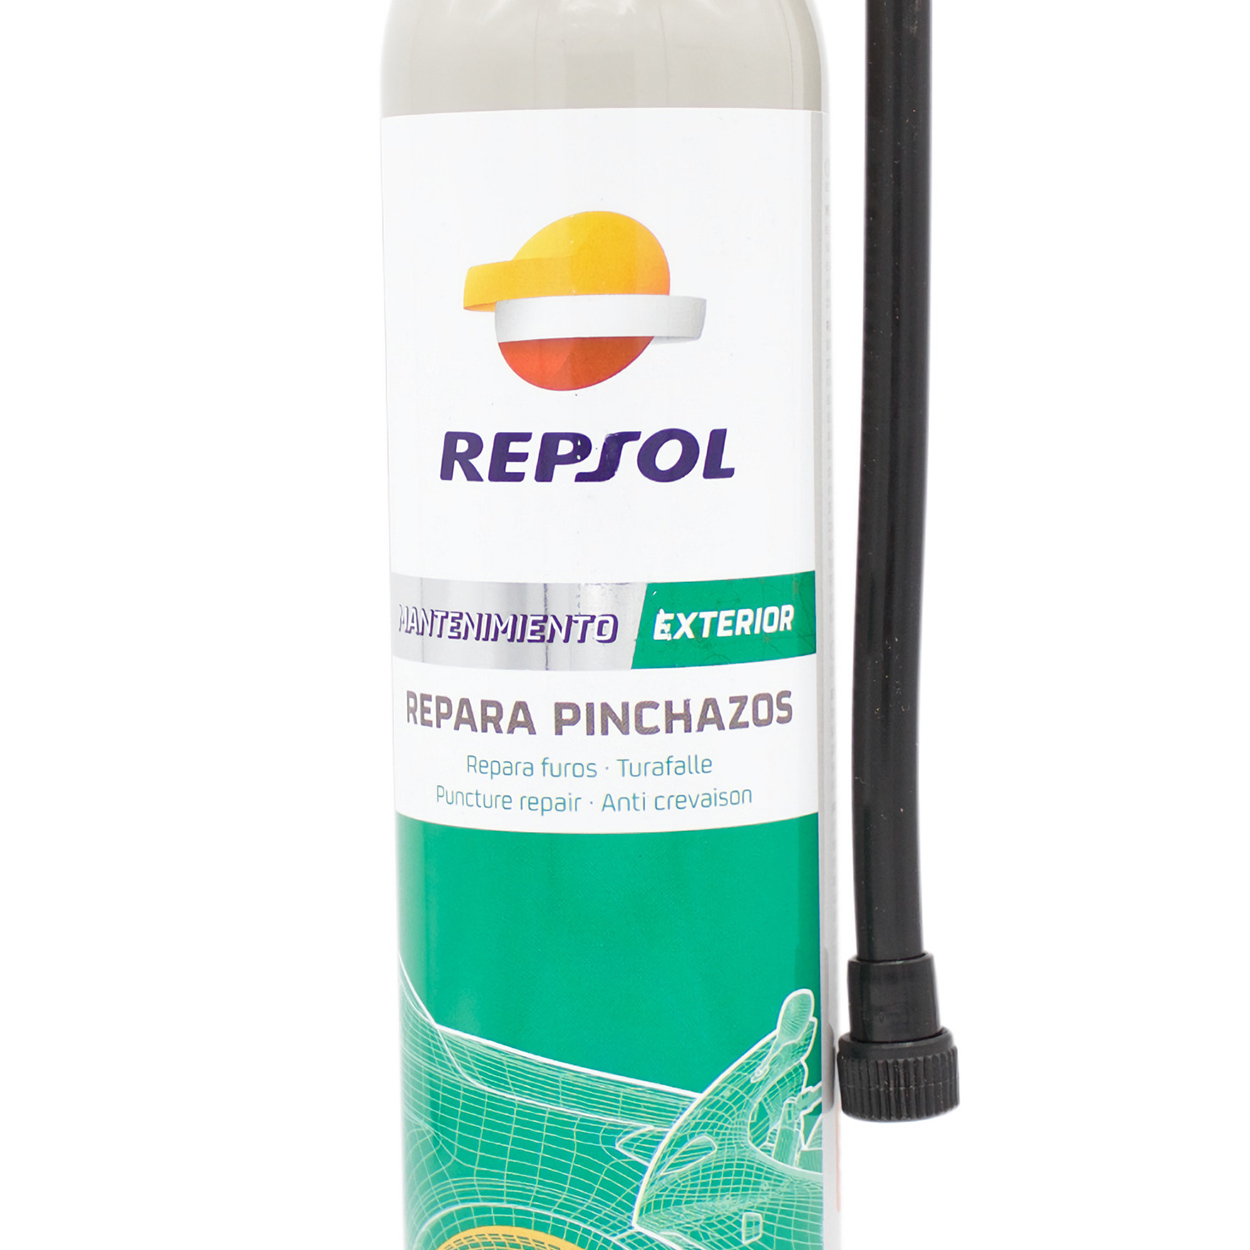 Bicimex Detalles Reparador de pinchazos inflallantas en spray 300ml Repsol